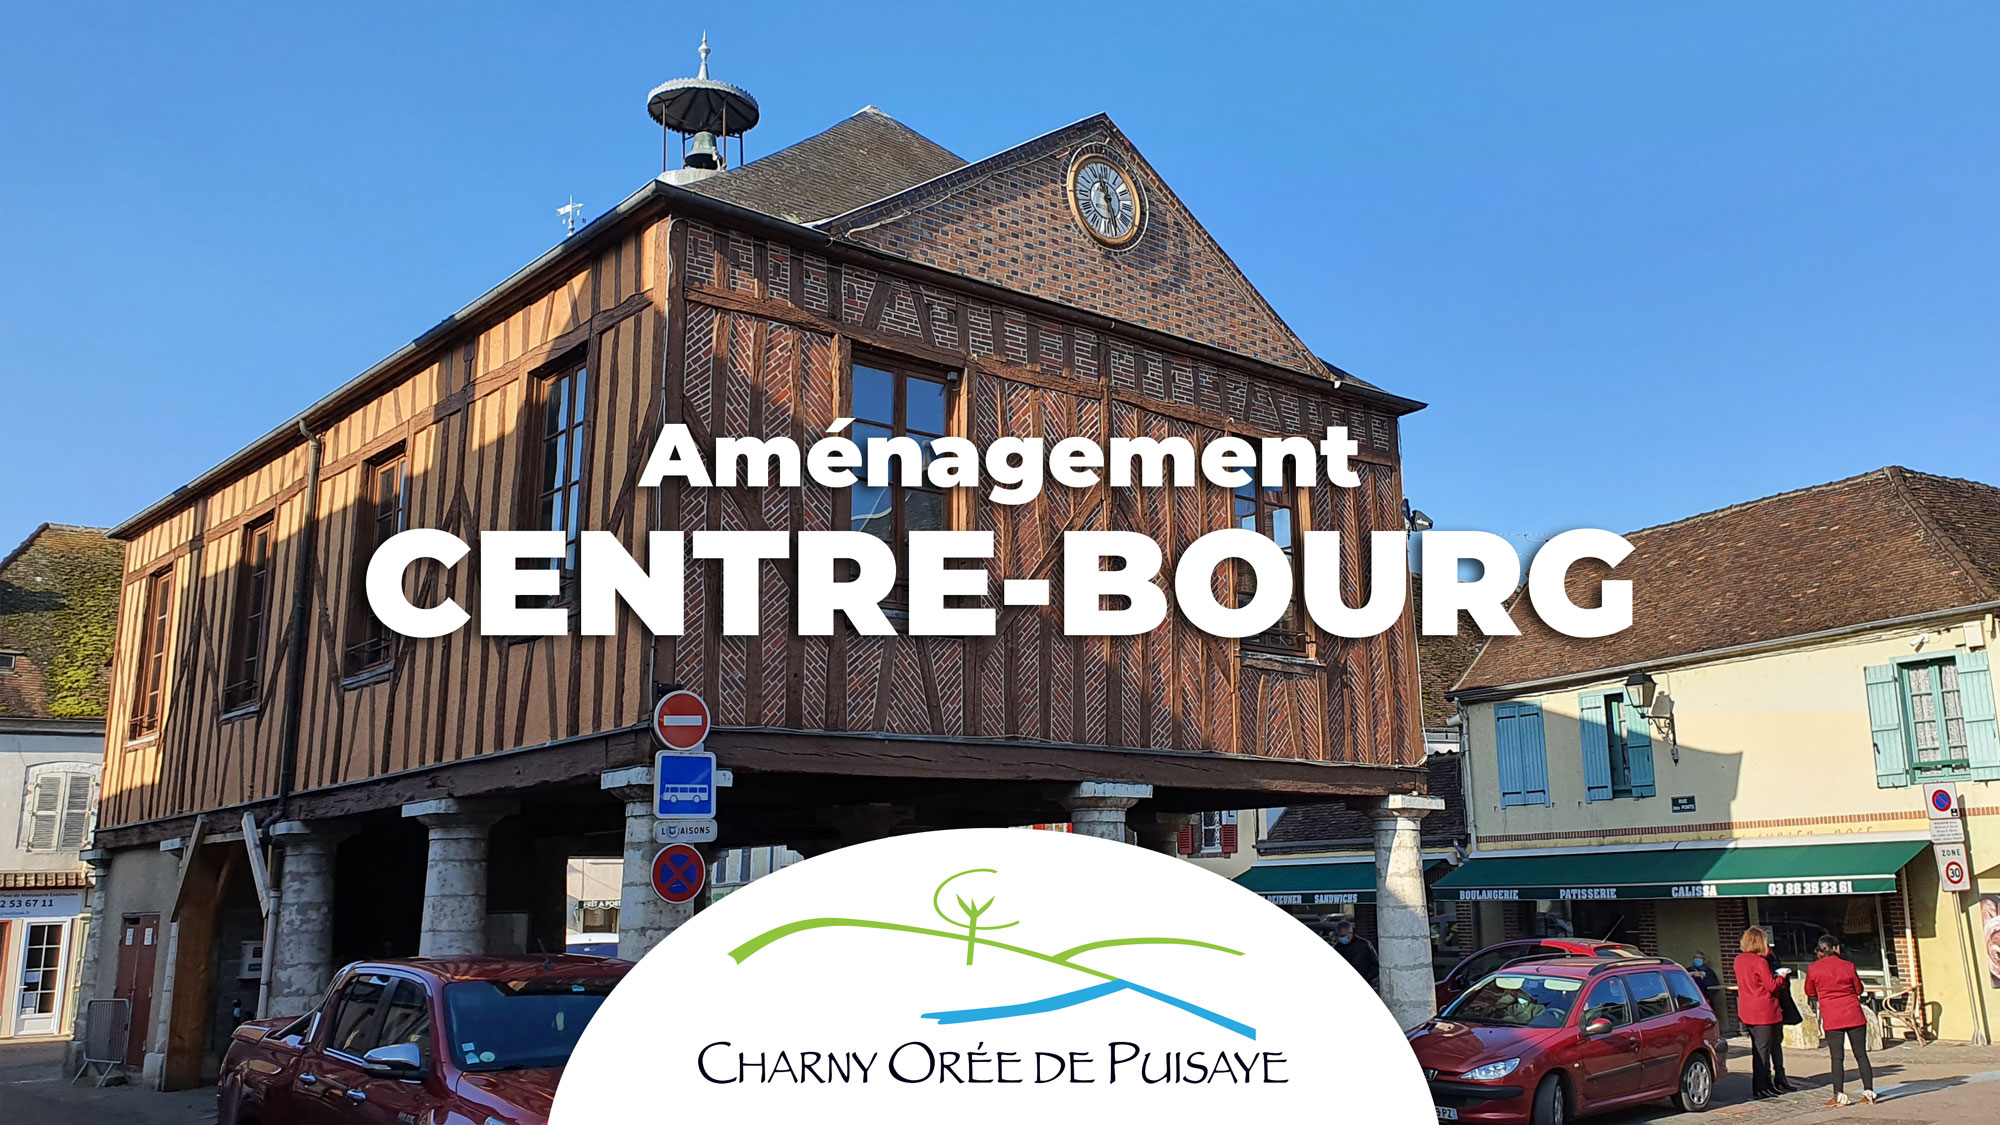 Aménagement centre-bourg Charny Orée de Puisaye